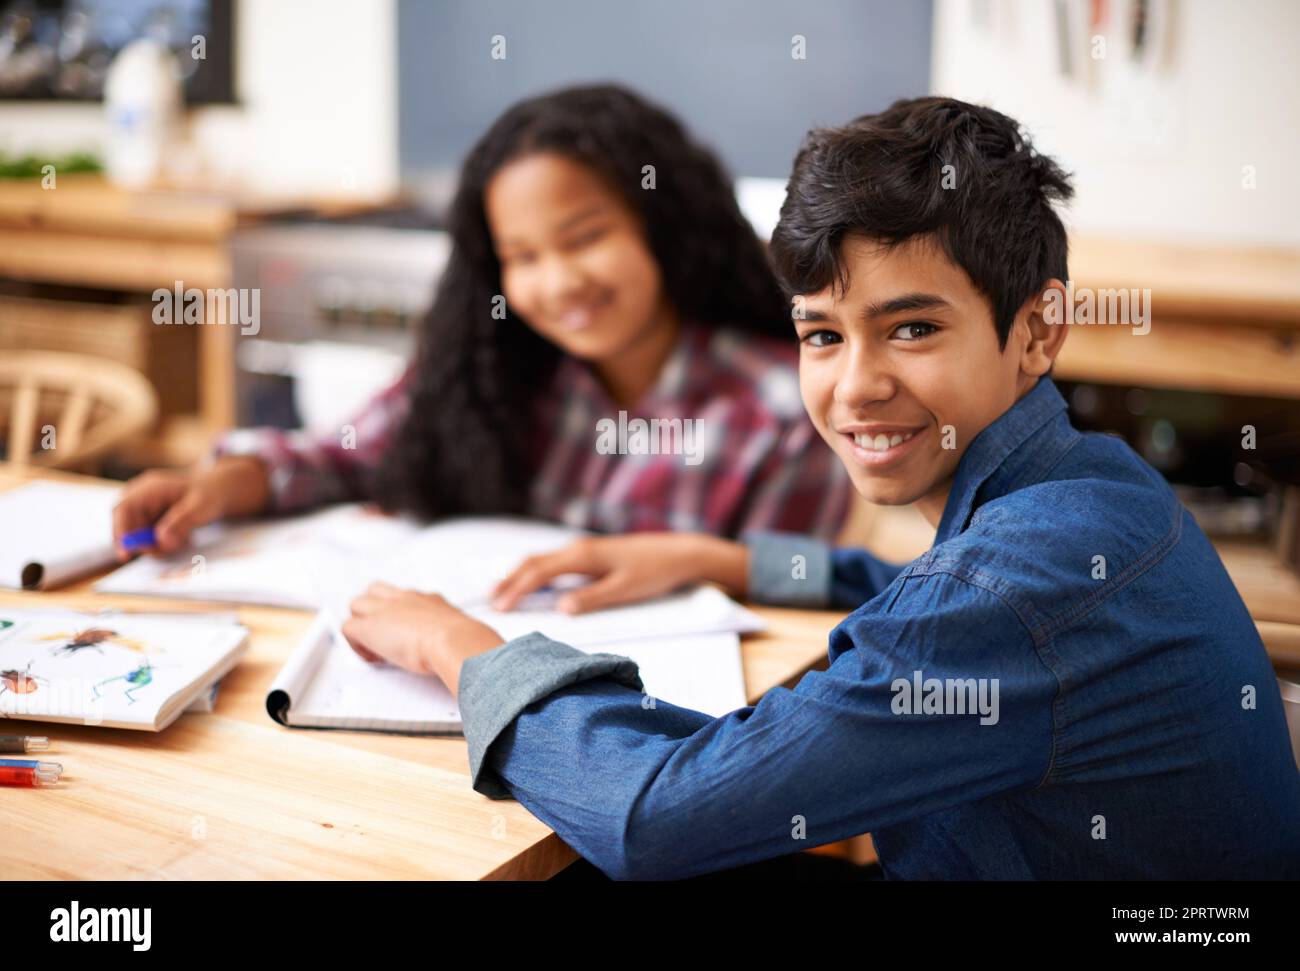 Es mi compañero de estudio favorito. Dos jóvenes estudiantes estudiando juntos en un salón de clase. Foto de stock